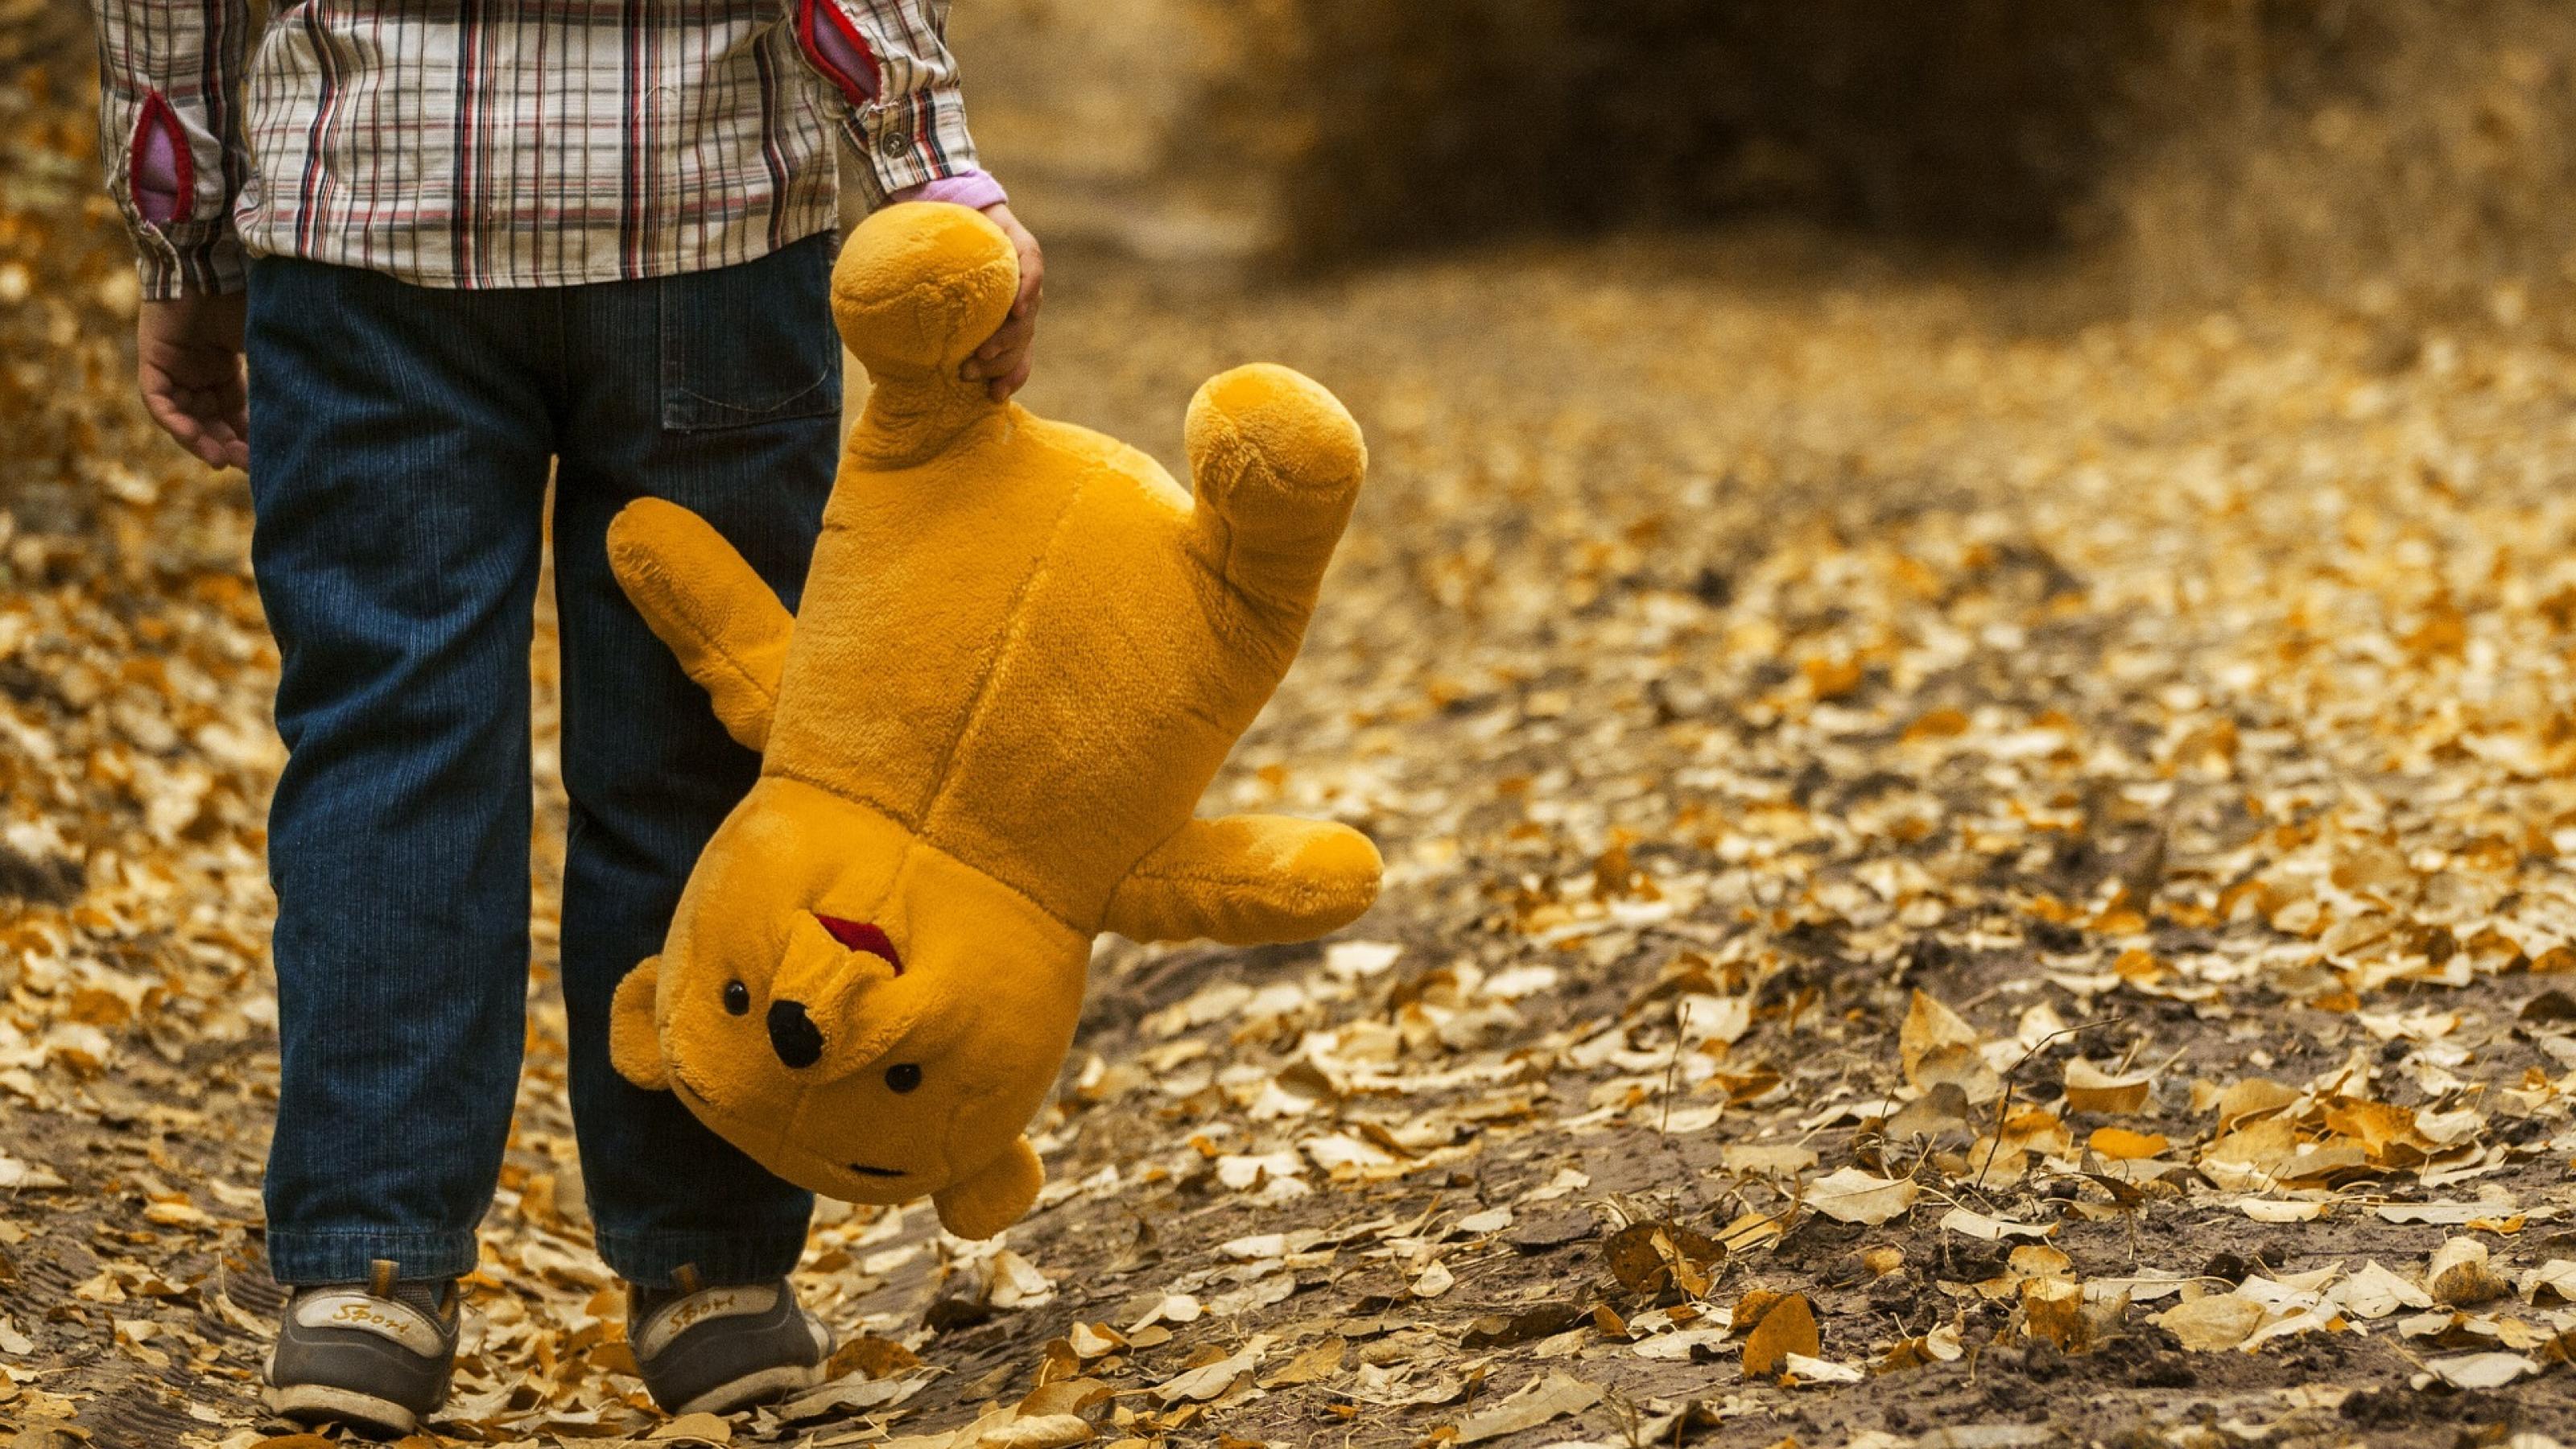 Ein kleines Kind, dessen Kopf man nicht sieht, geht mit seinem Teddy-Bär auf einem Weg, auf dem bunte Blätter liegen.